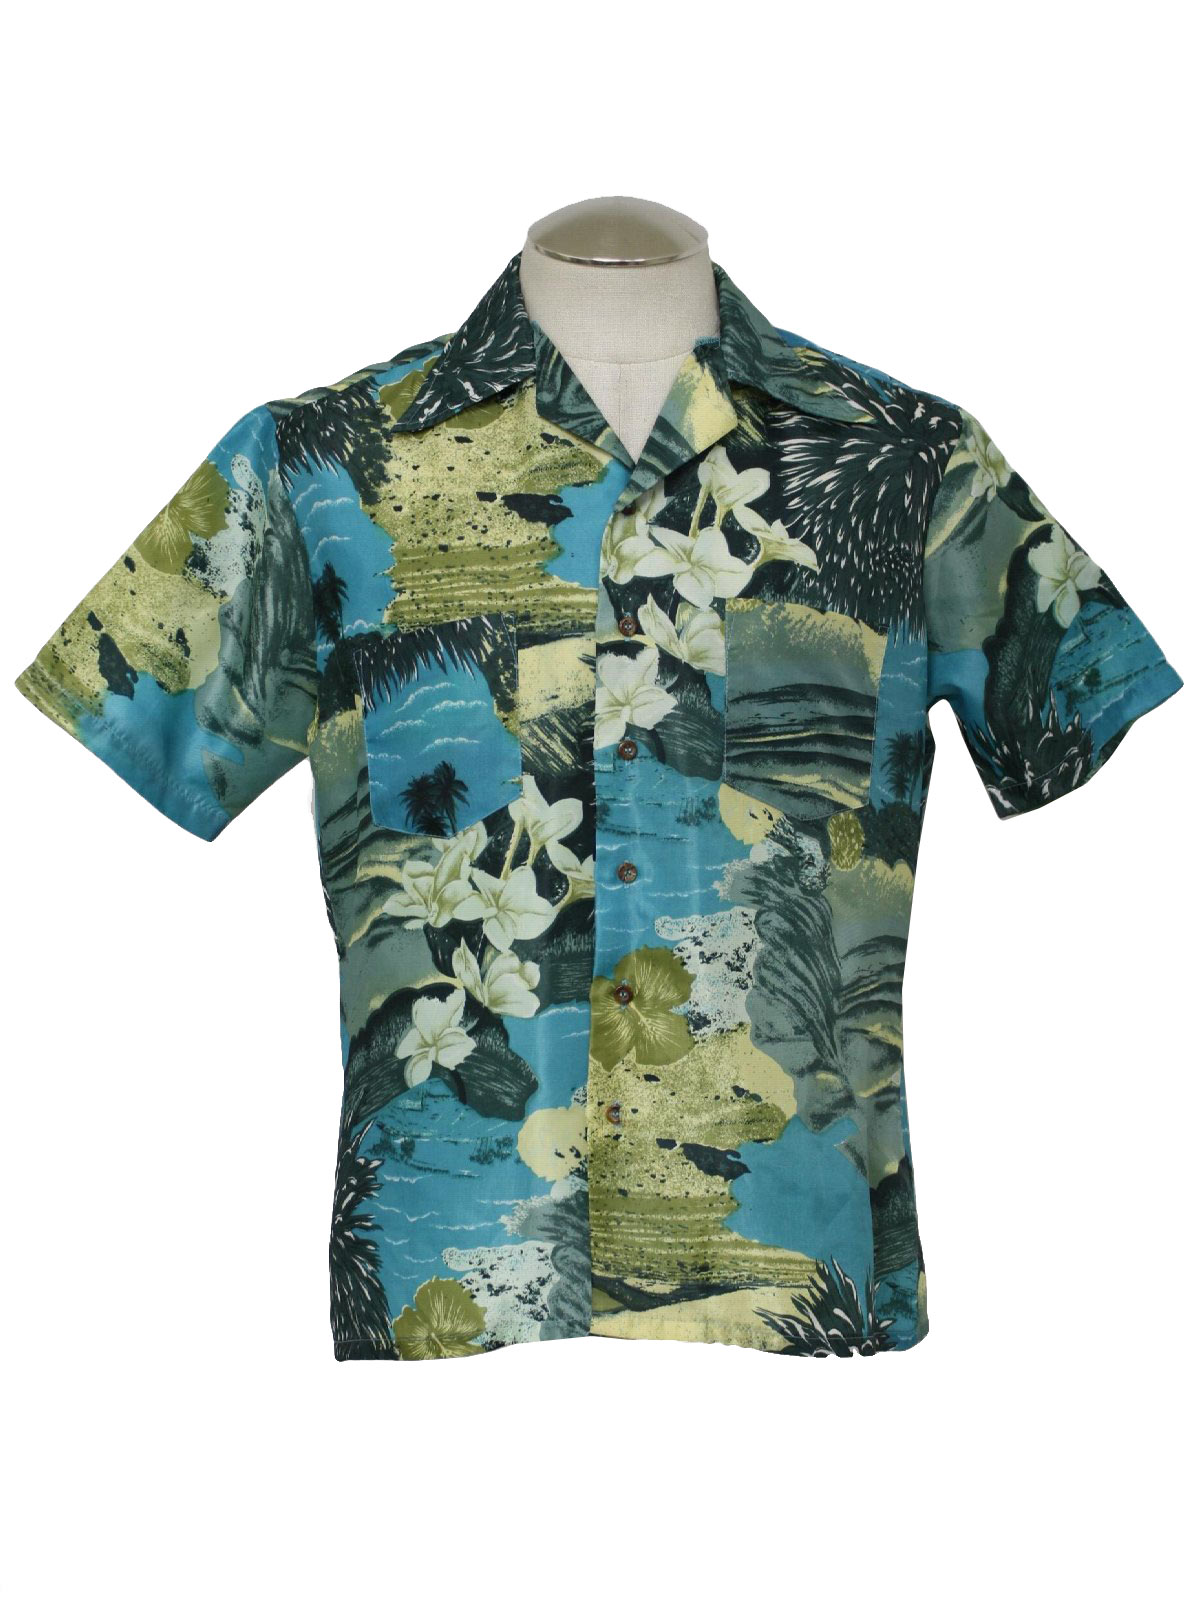 Retro Sixties Hawaiian Shirt: Early 60s -Mr. Florida- Mens shades of ...